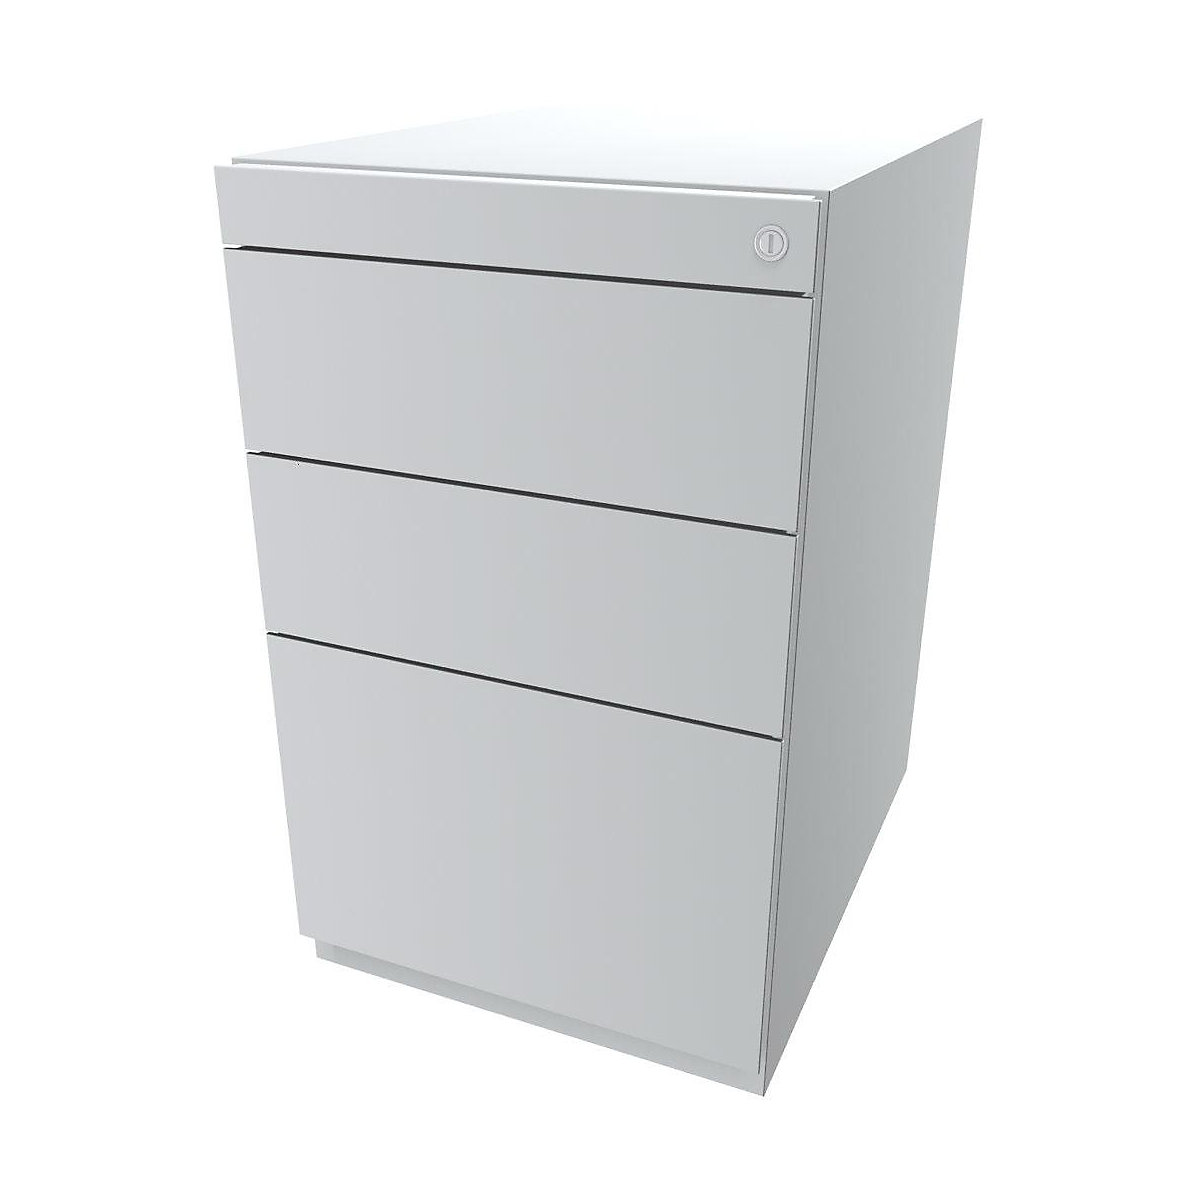 Standcontainer Note™, mit 2 Universalschubladen, 1 Hängeregistratur BISLEY